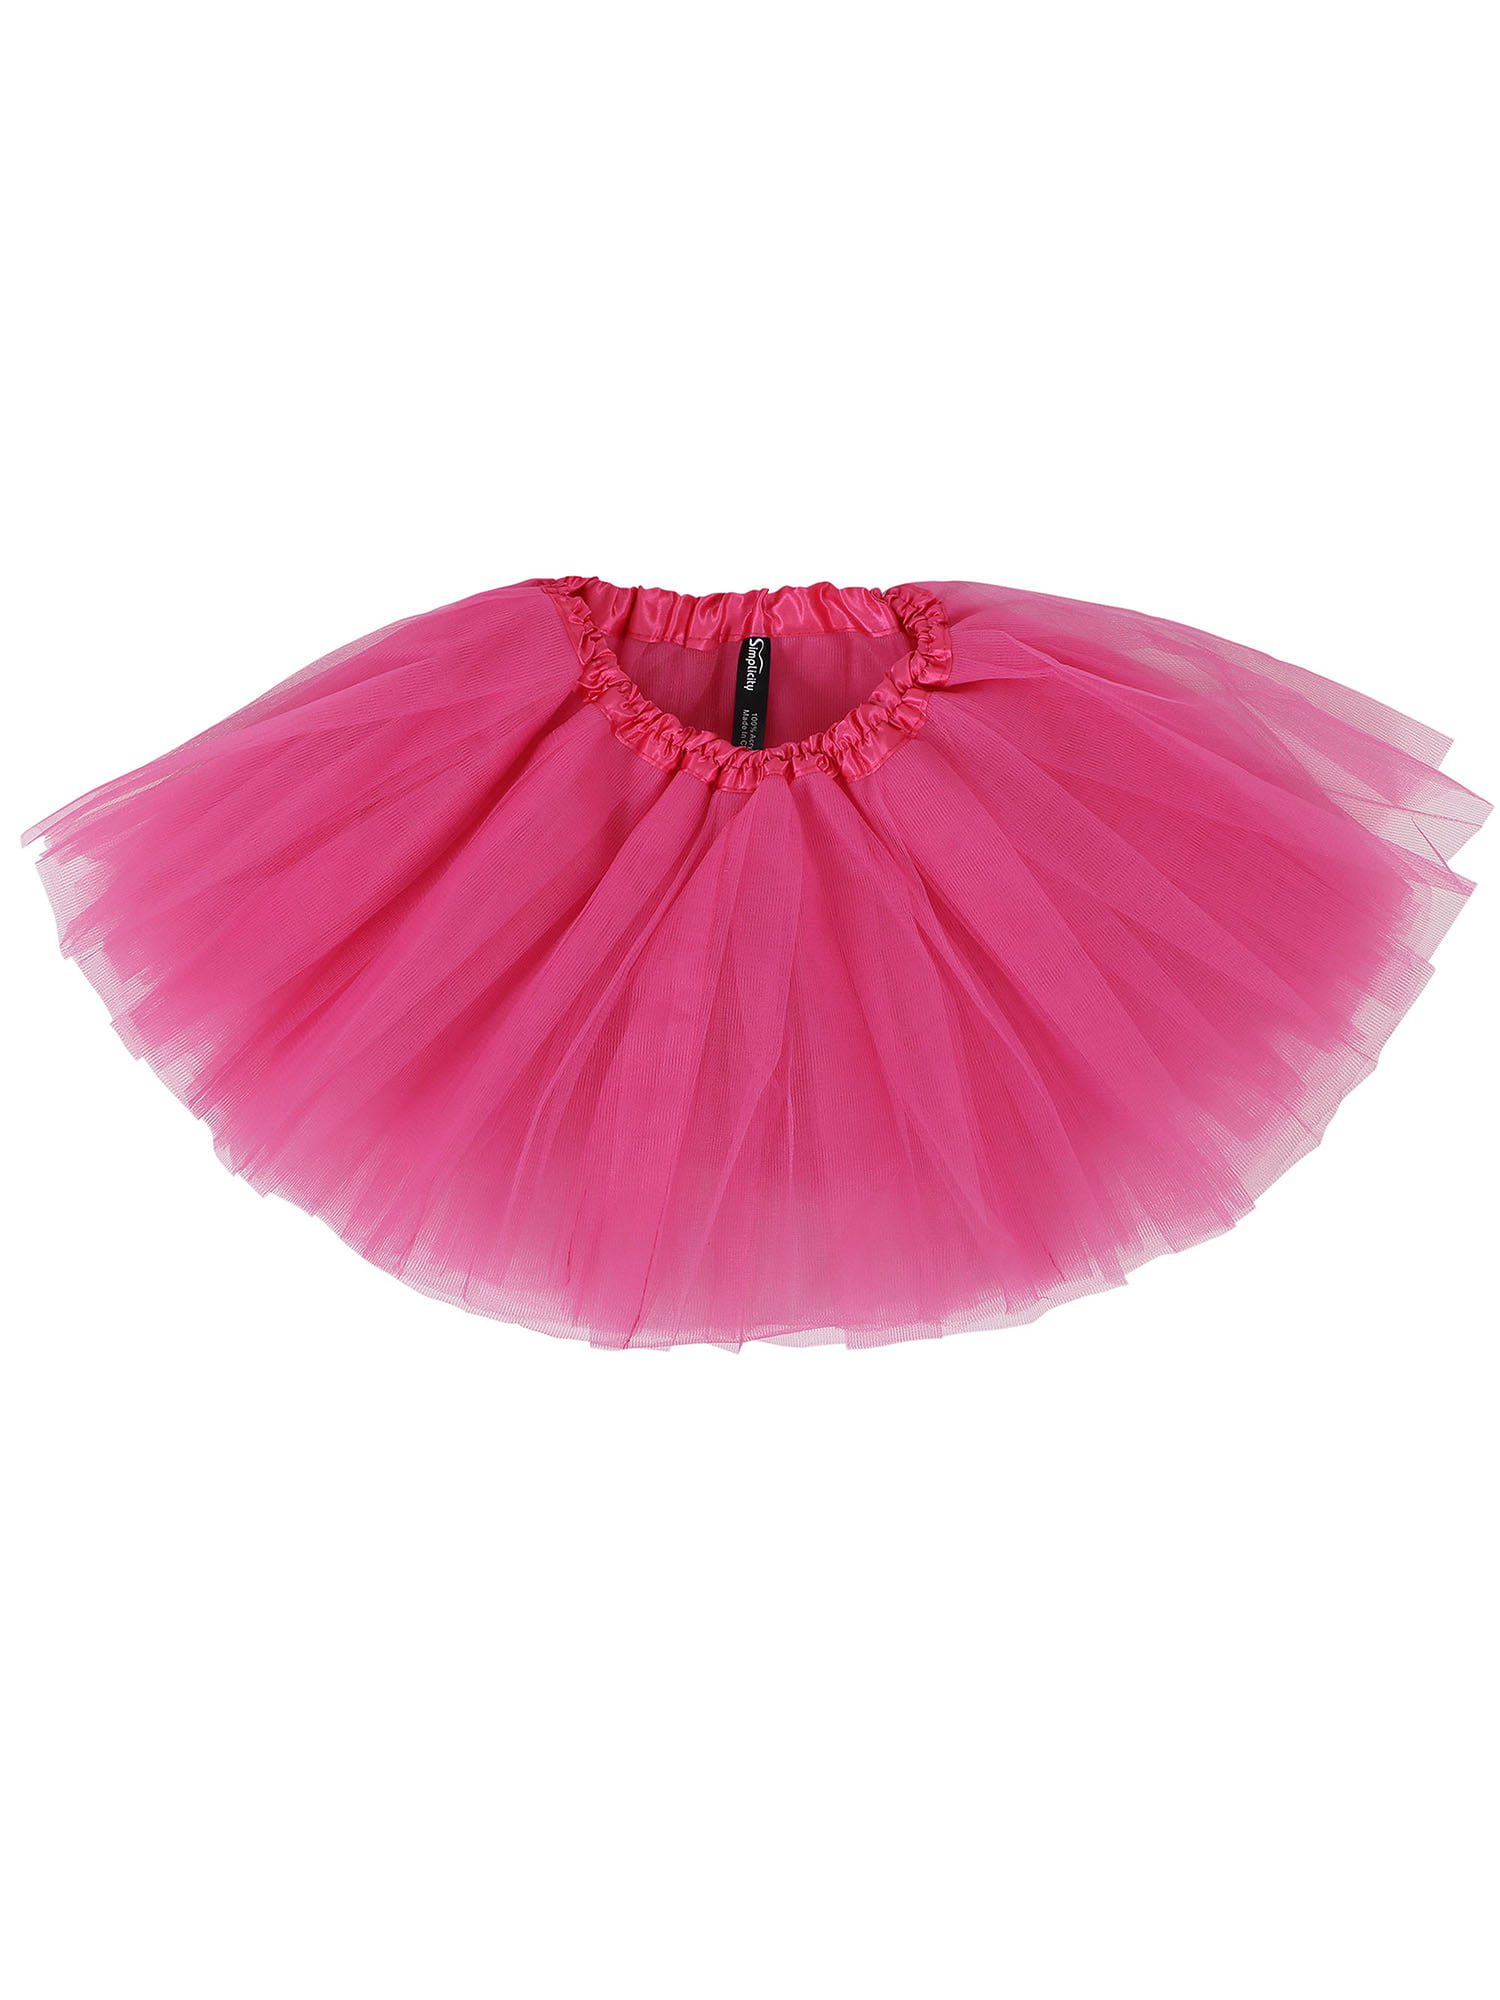 Simplicity Little Girls Dance Dress Up Rose Tutu Skirt for Kids, 2-8 ...